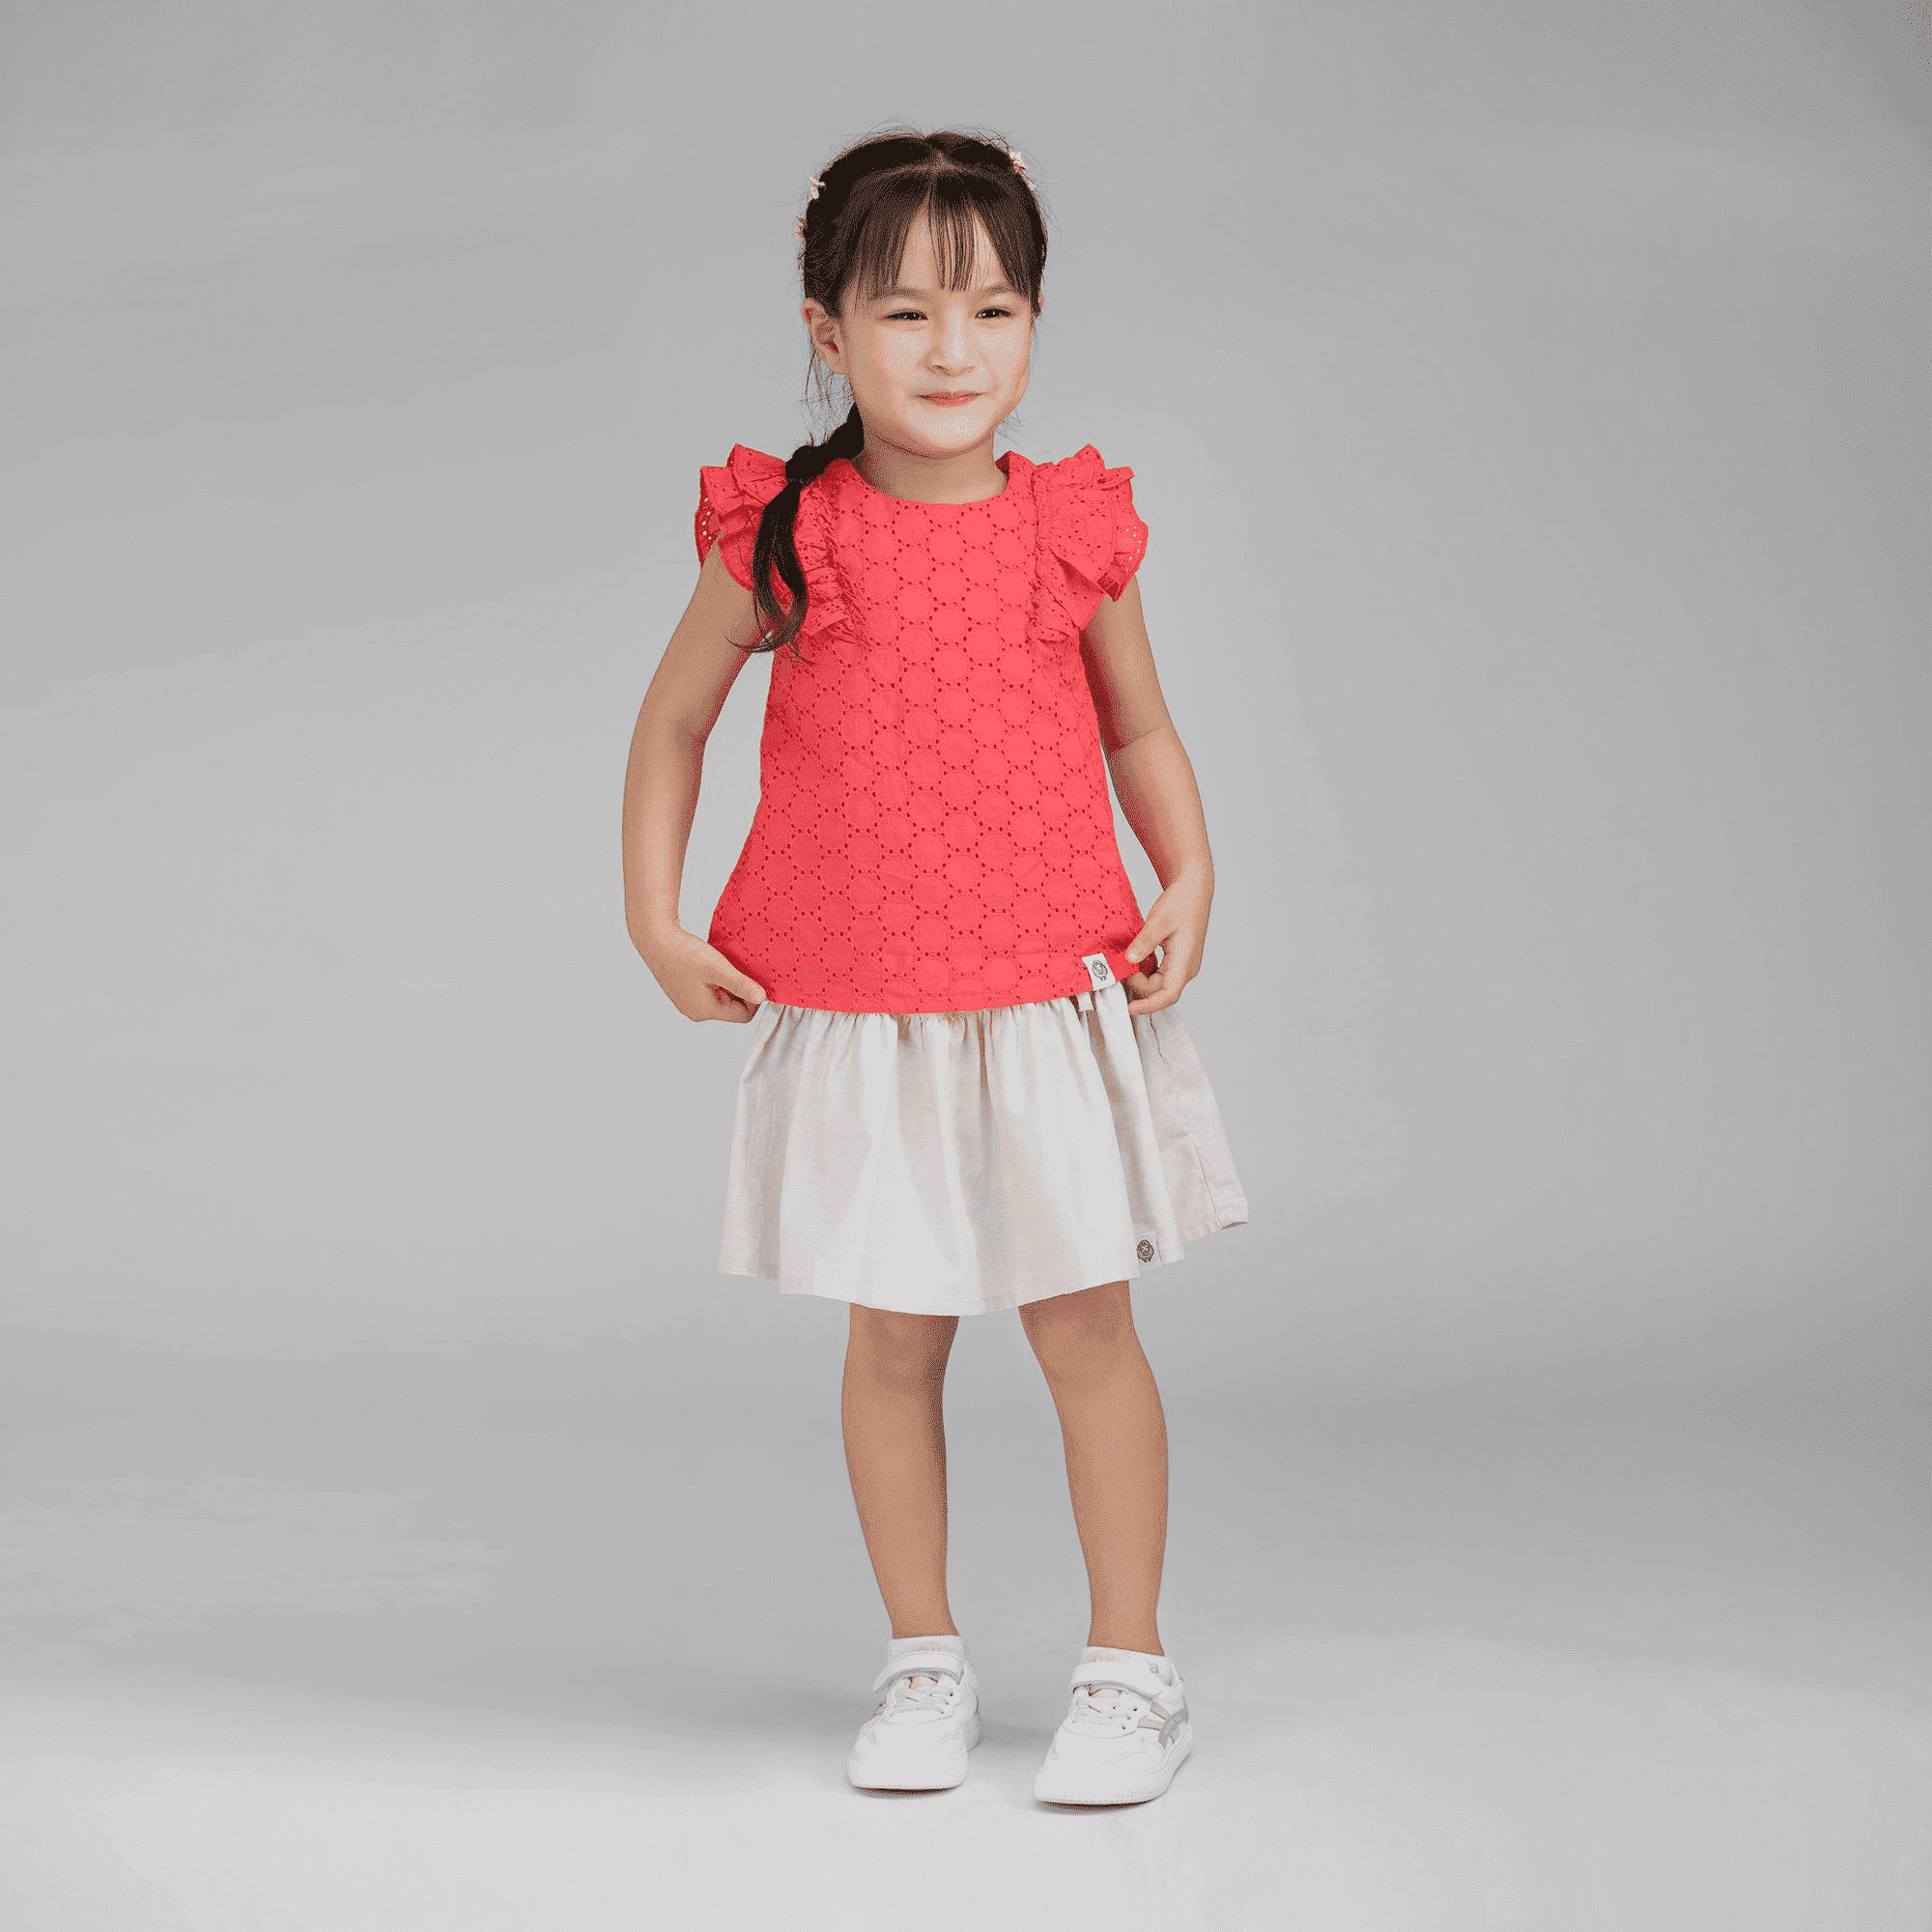 5 mẫu quần áo bé gái 5 tuổi được mẹ chọn mua NHIỀU nhất hè 2021